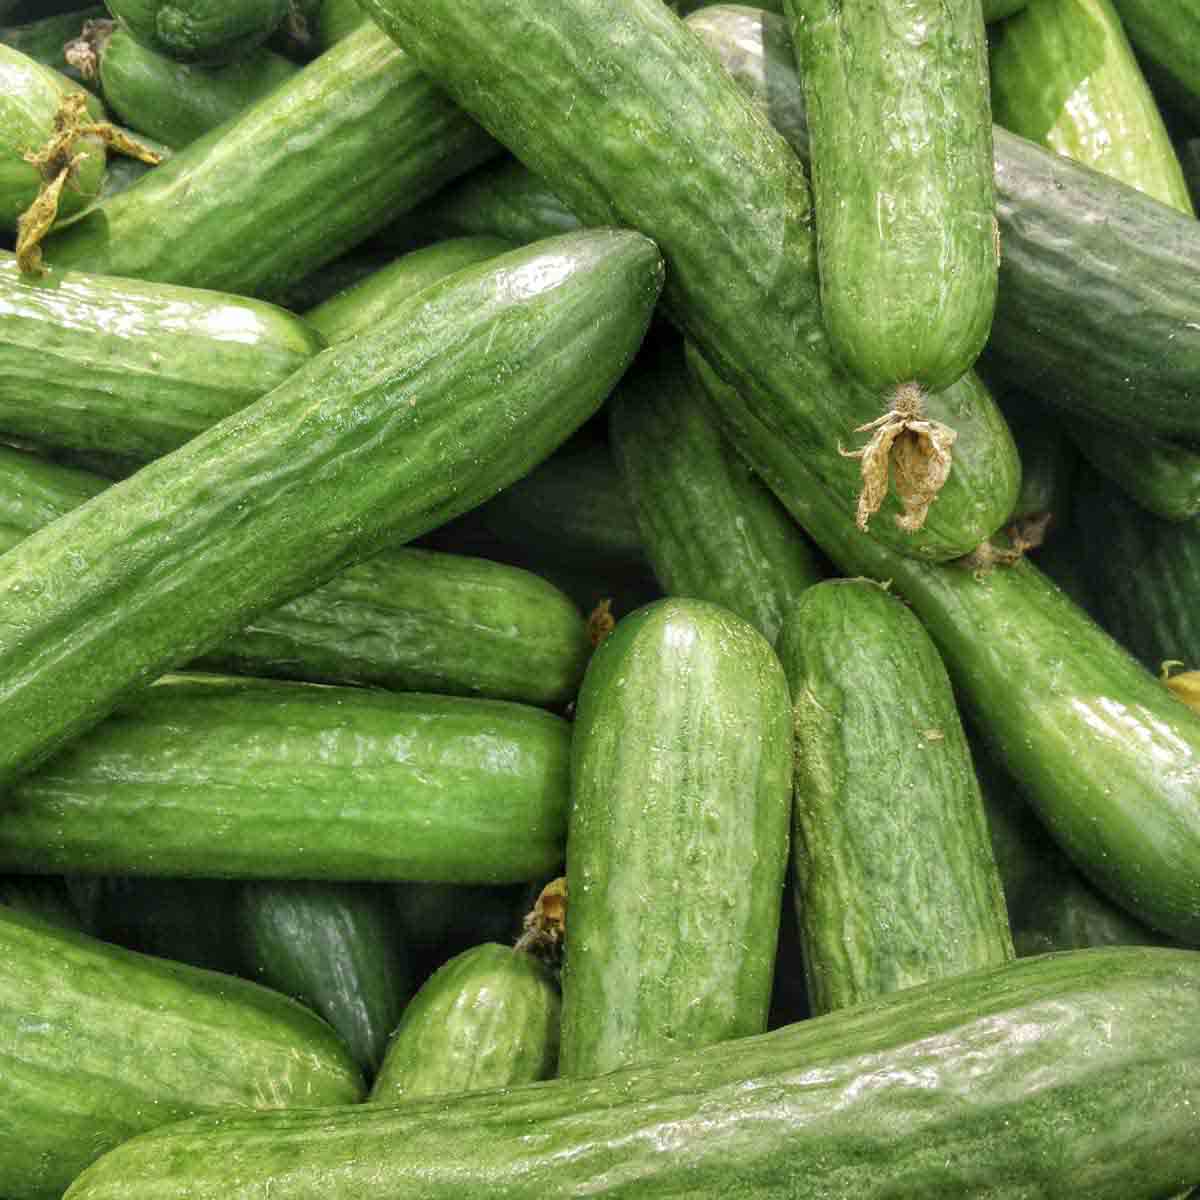 Ripe cucumbers in a pile.